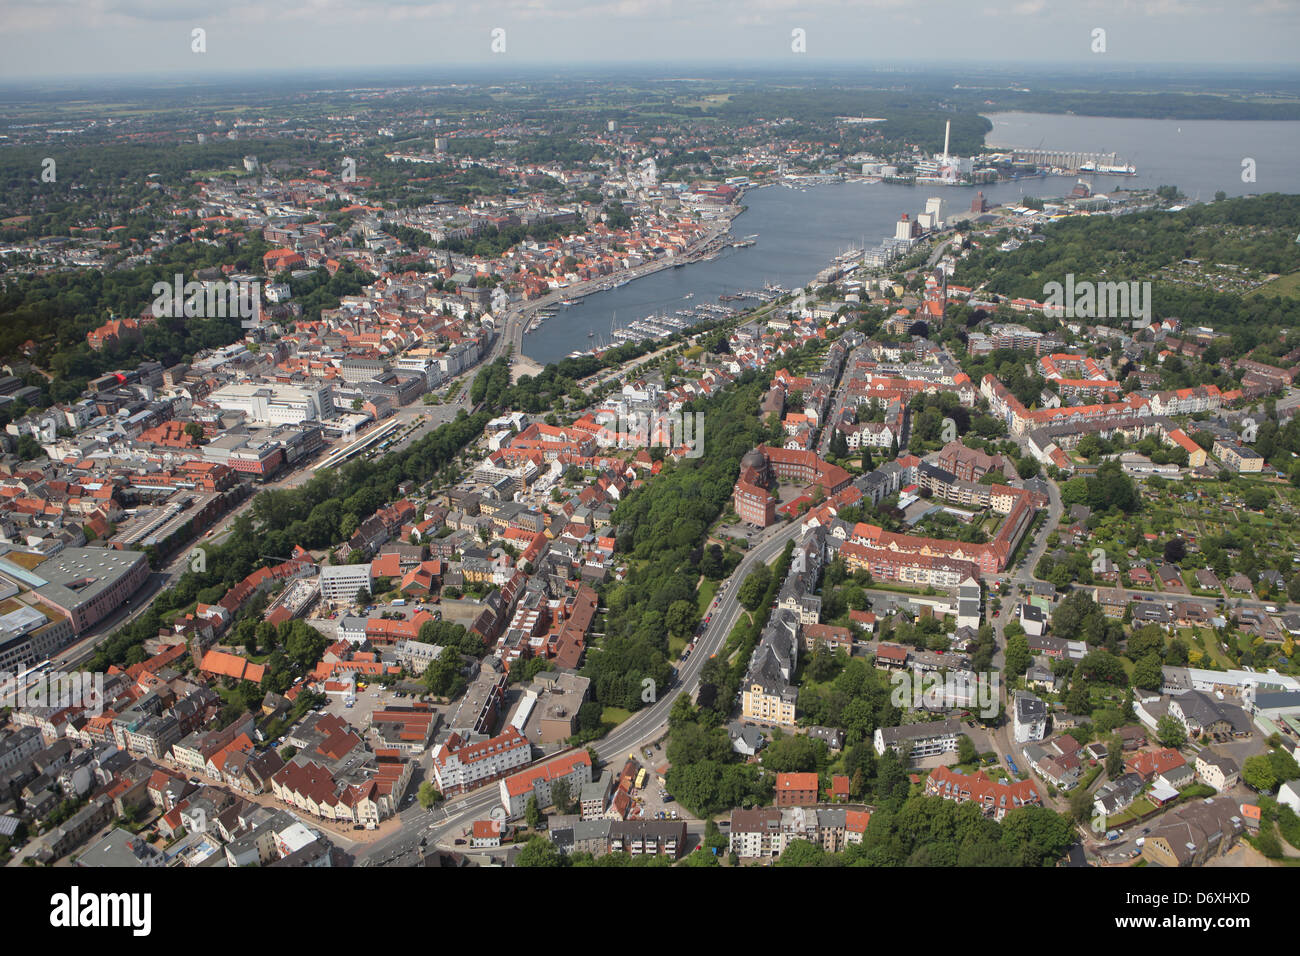 Flensburg, Germania, vista aerea di Flensburg con vedute della città e il quartiere portuale Jürgensby Foto Stock